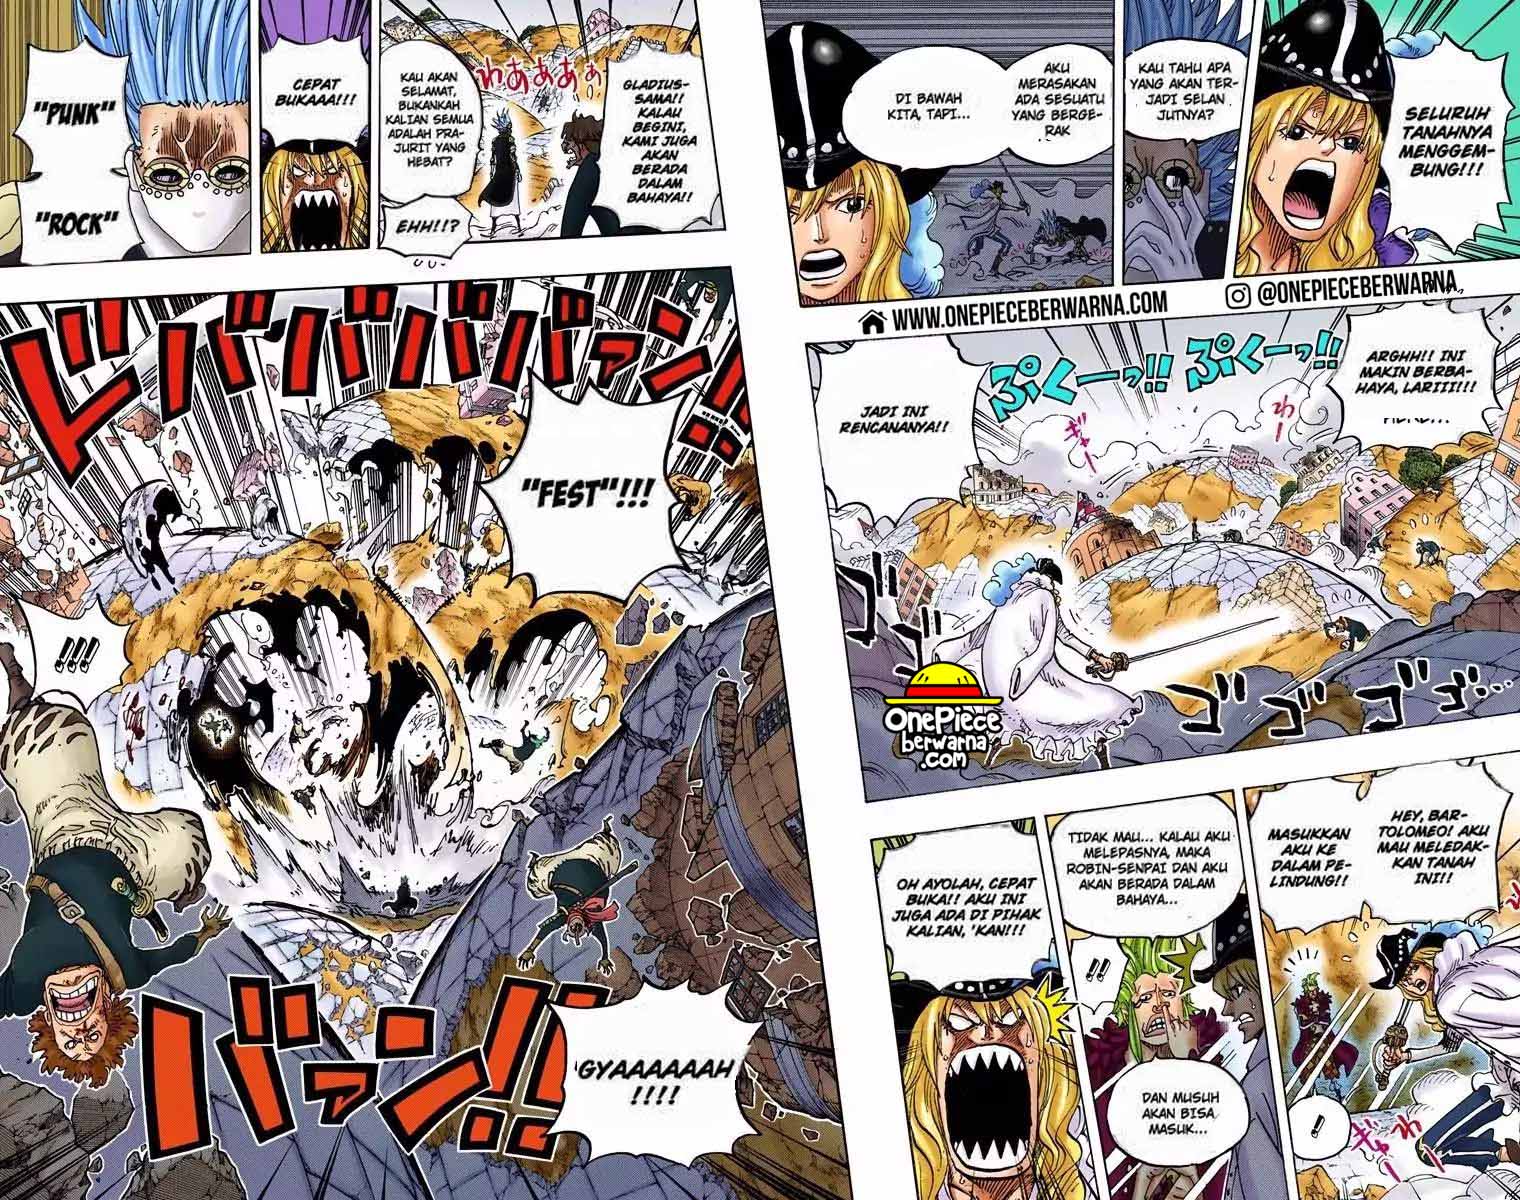 One Piece Berwarna Chapter 772